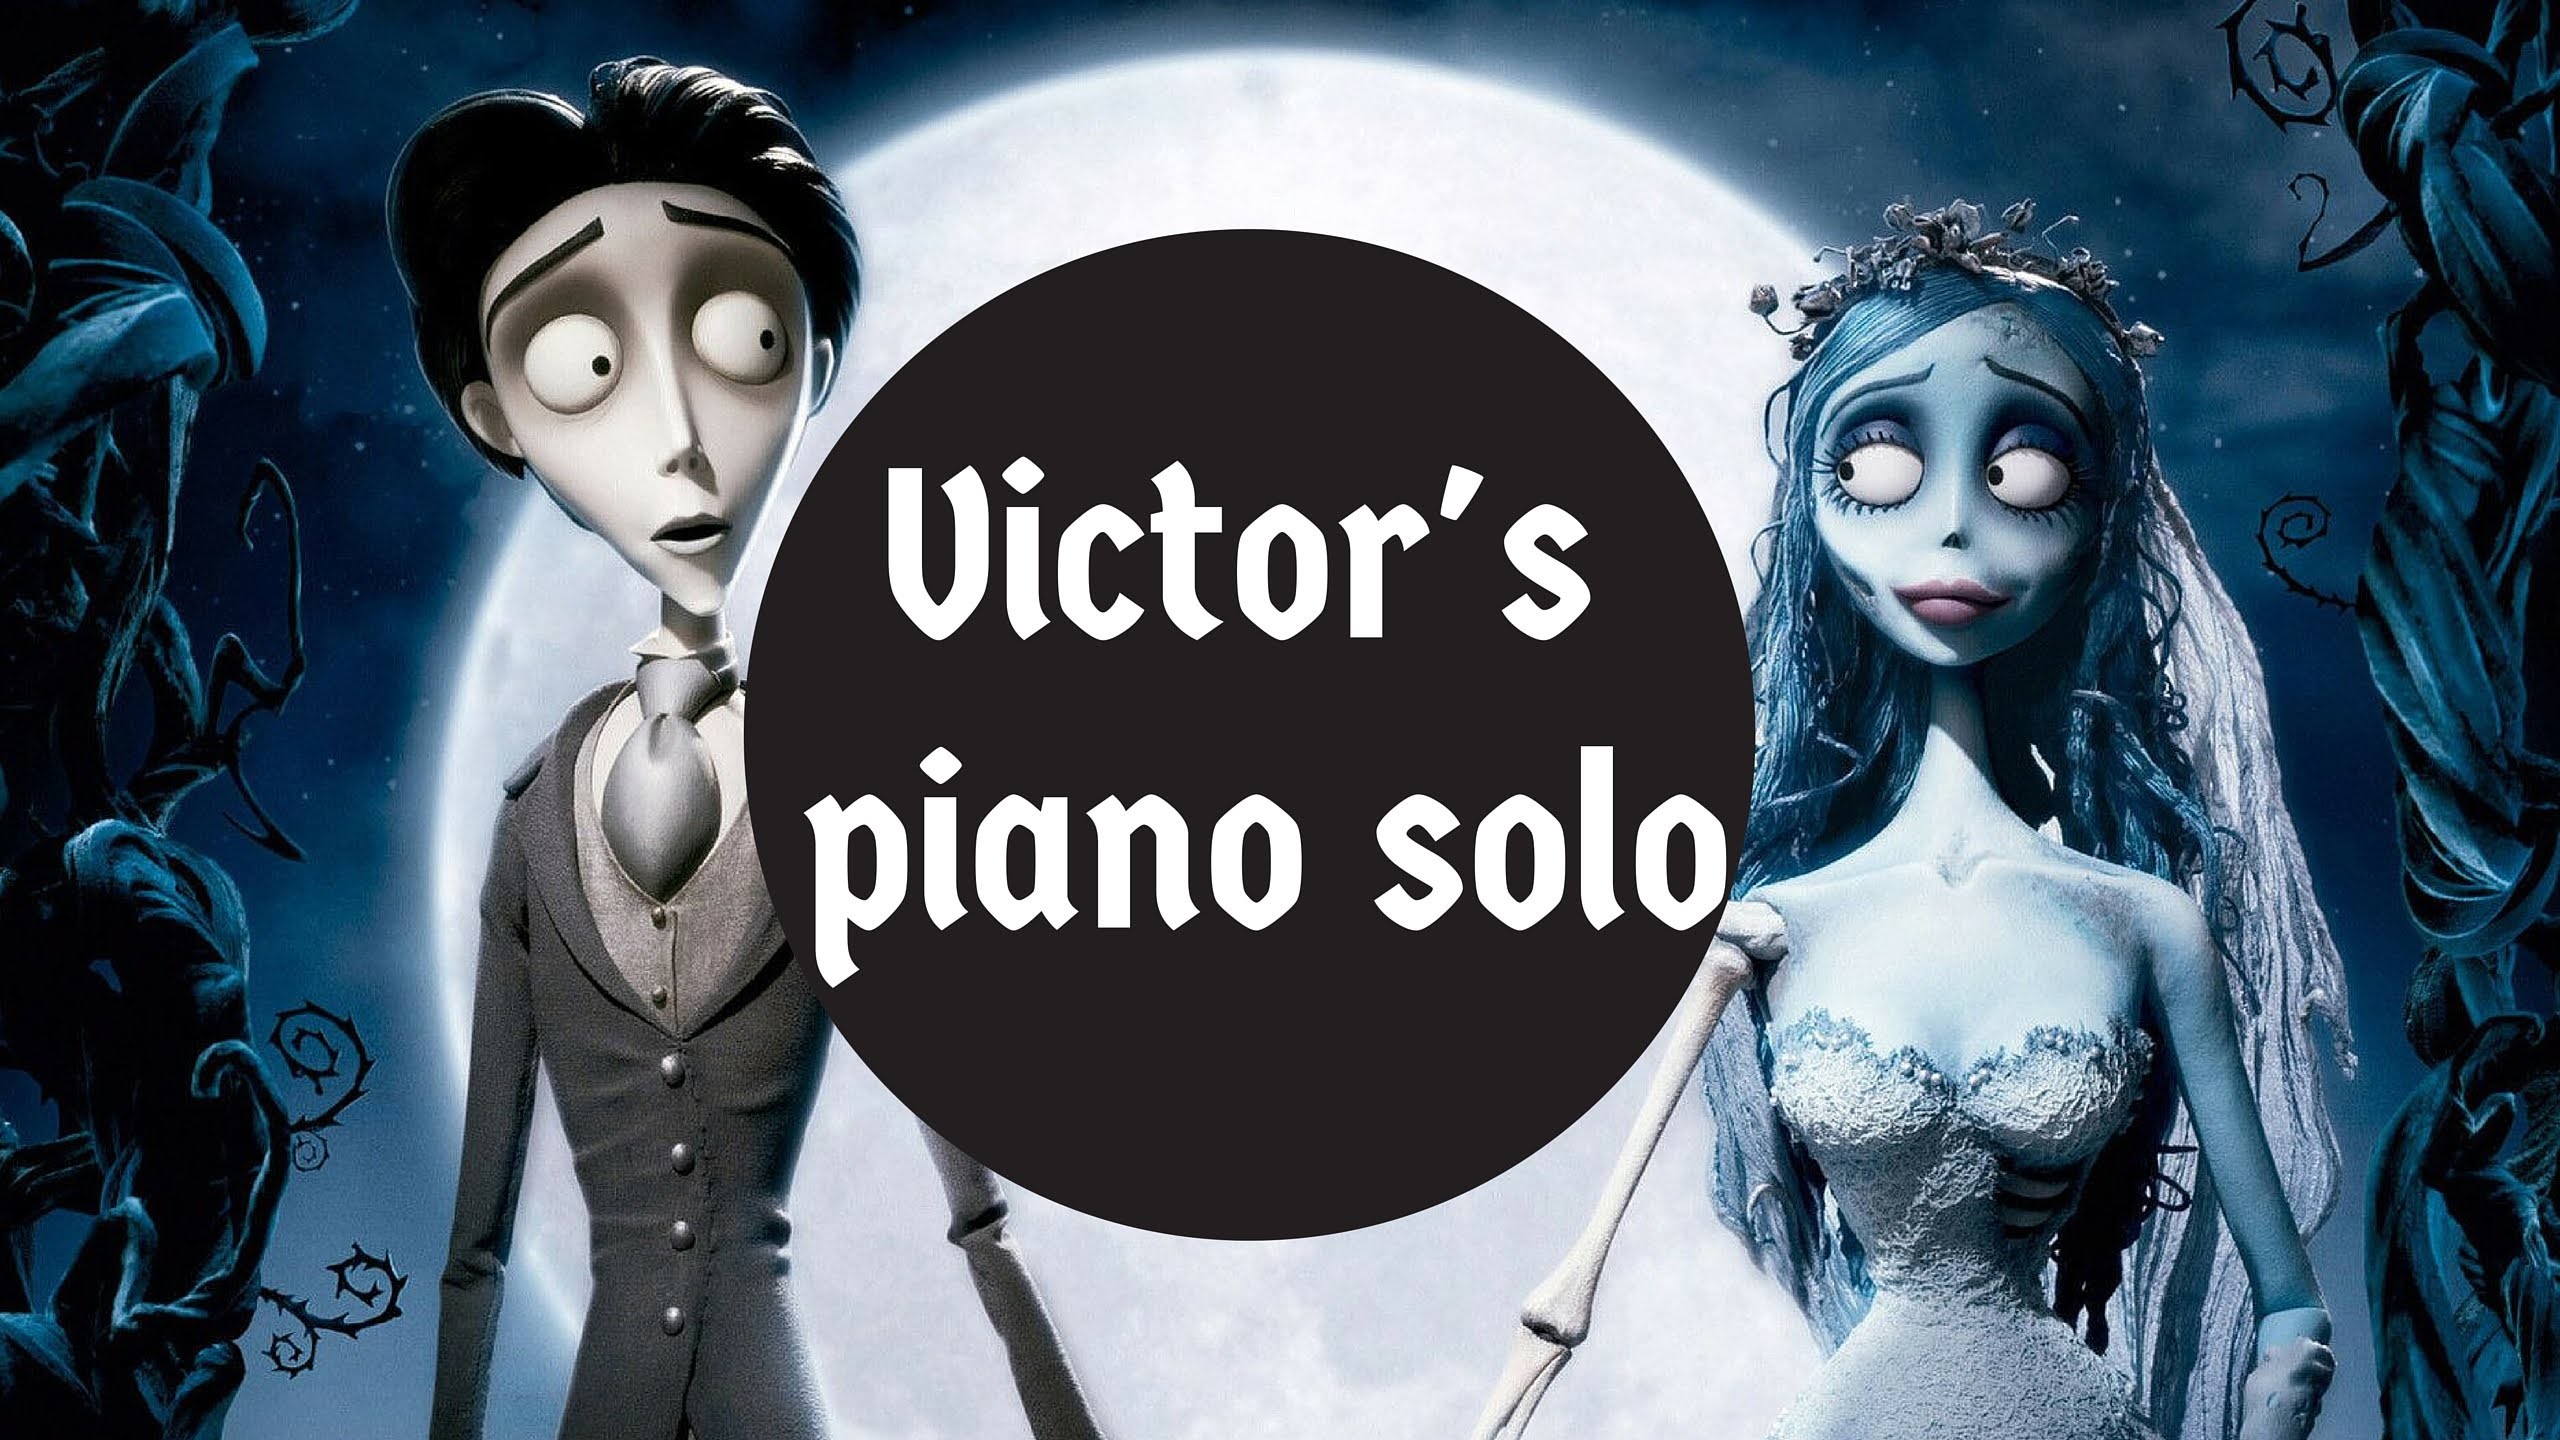 2560x1440 Victor's piano solo - Corpse Bride